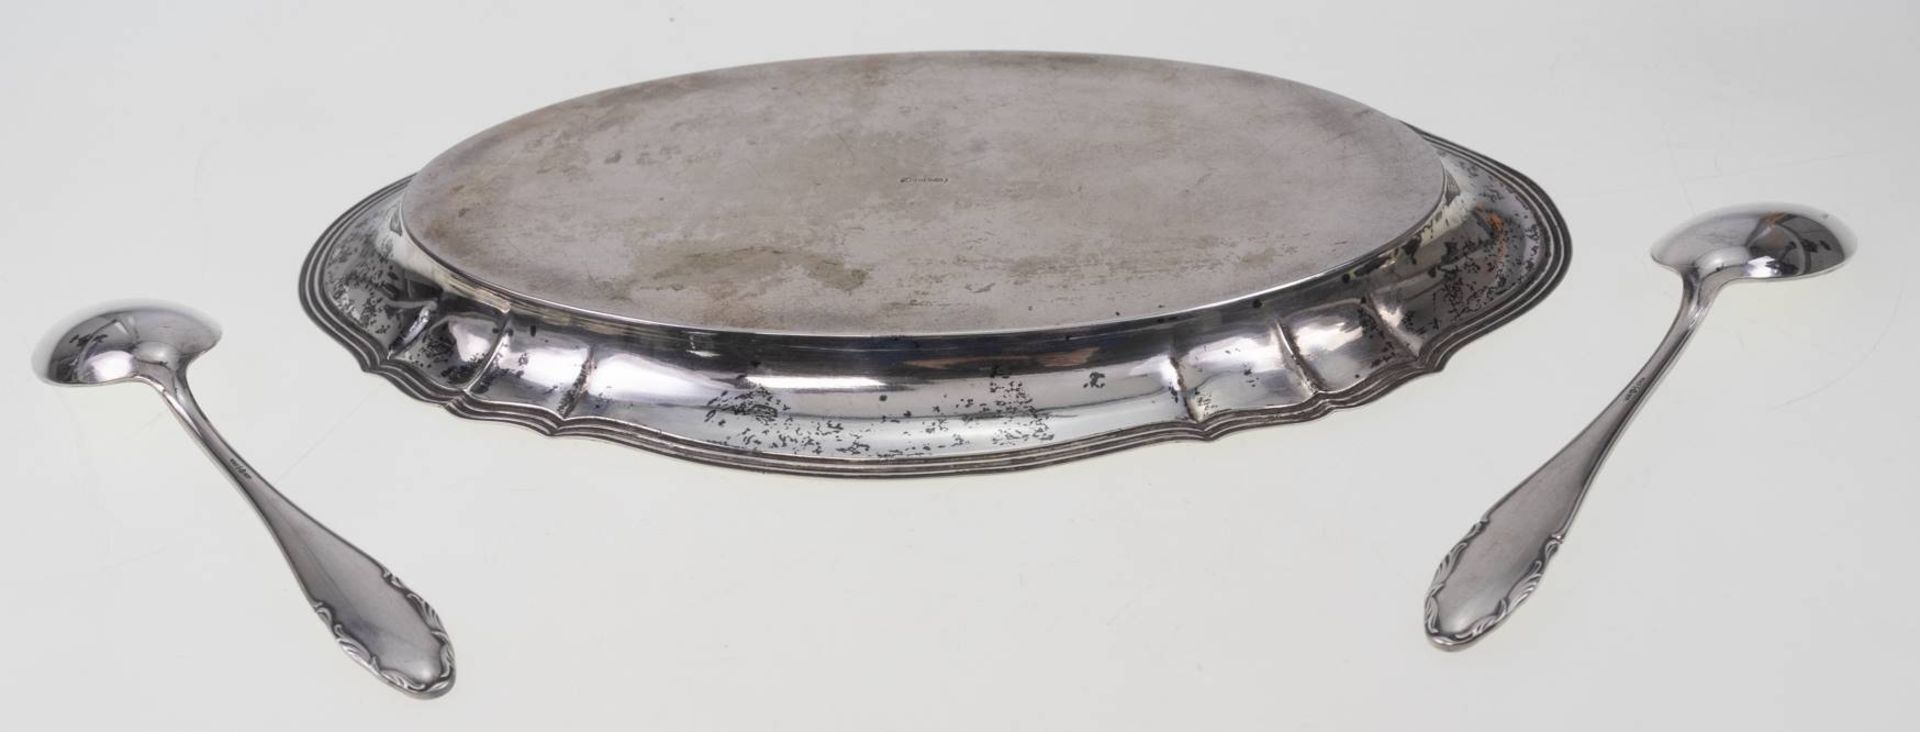 Kleines Tablett 830 Silber ca. 23x 15 cm und 12 Kaffelöffel von WMF in 800 Silber, Gesamtgewicht ca. - Bild 5 aus 6